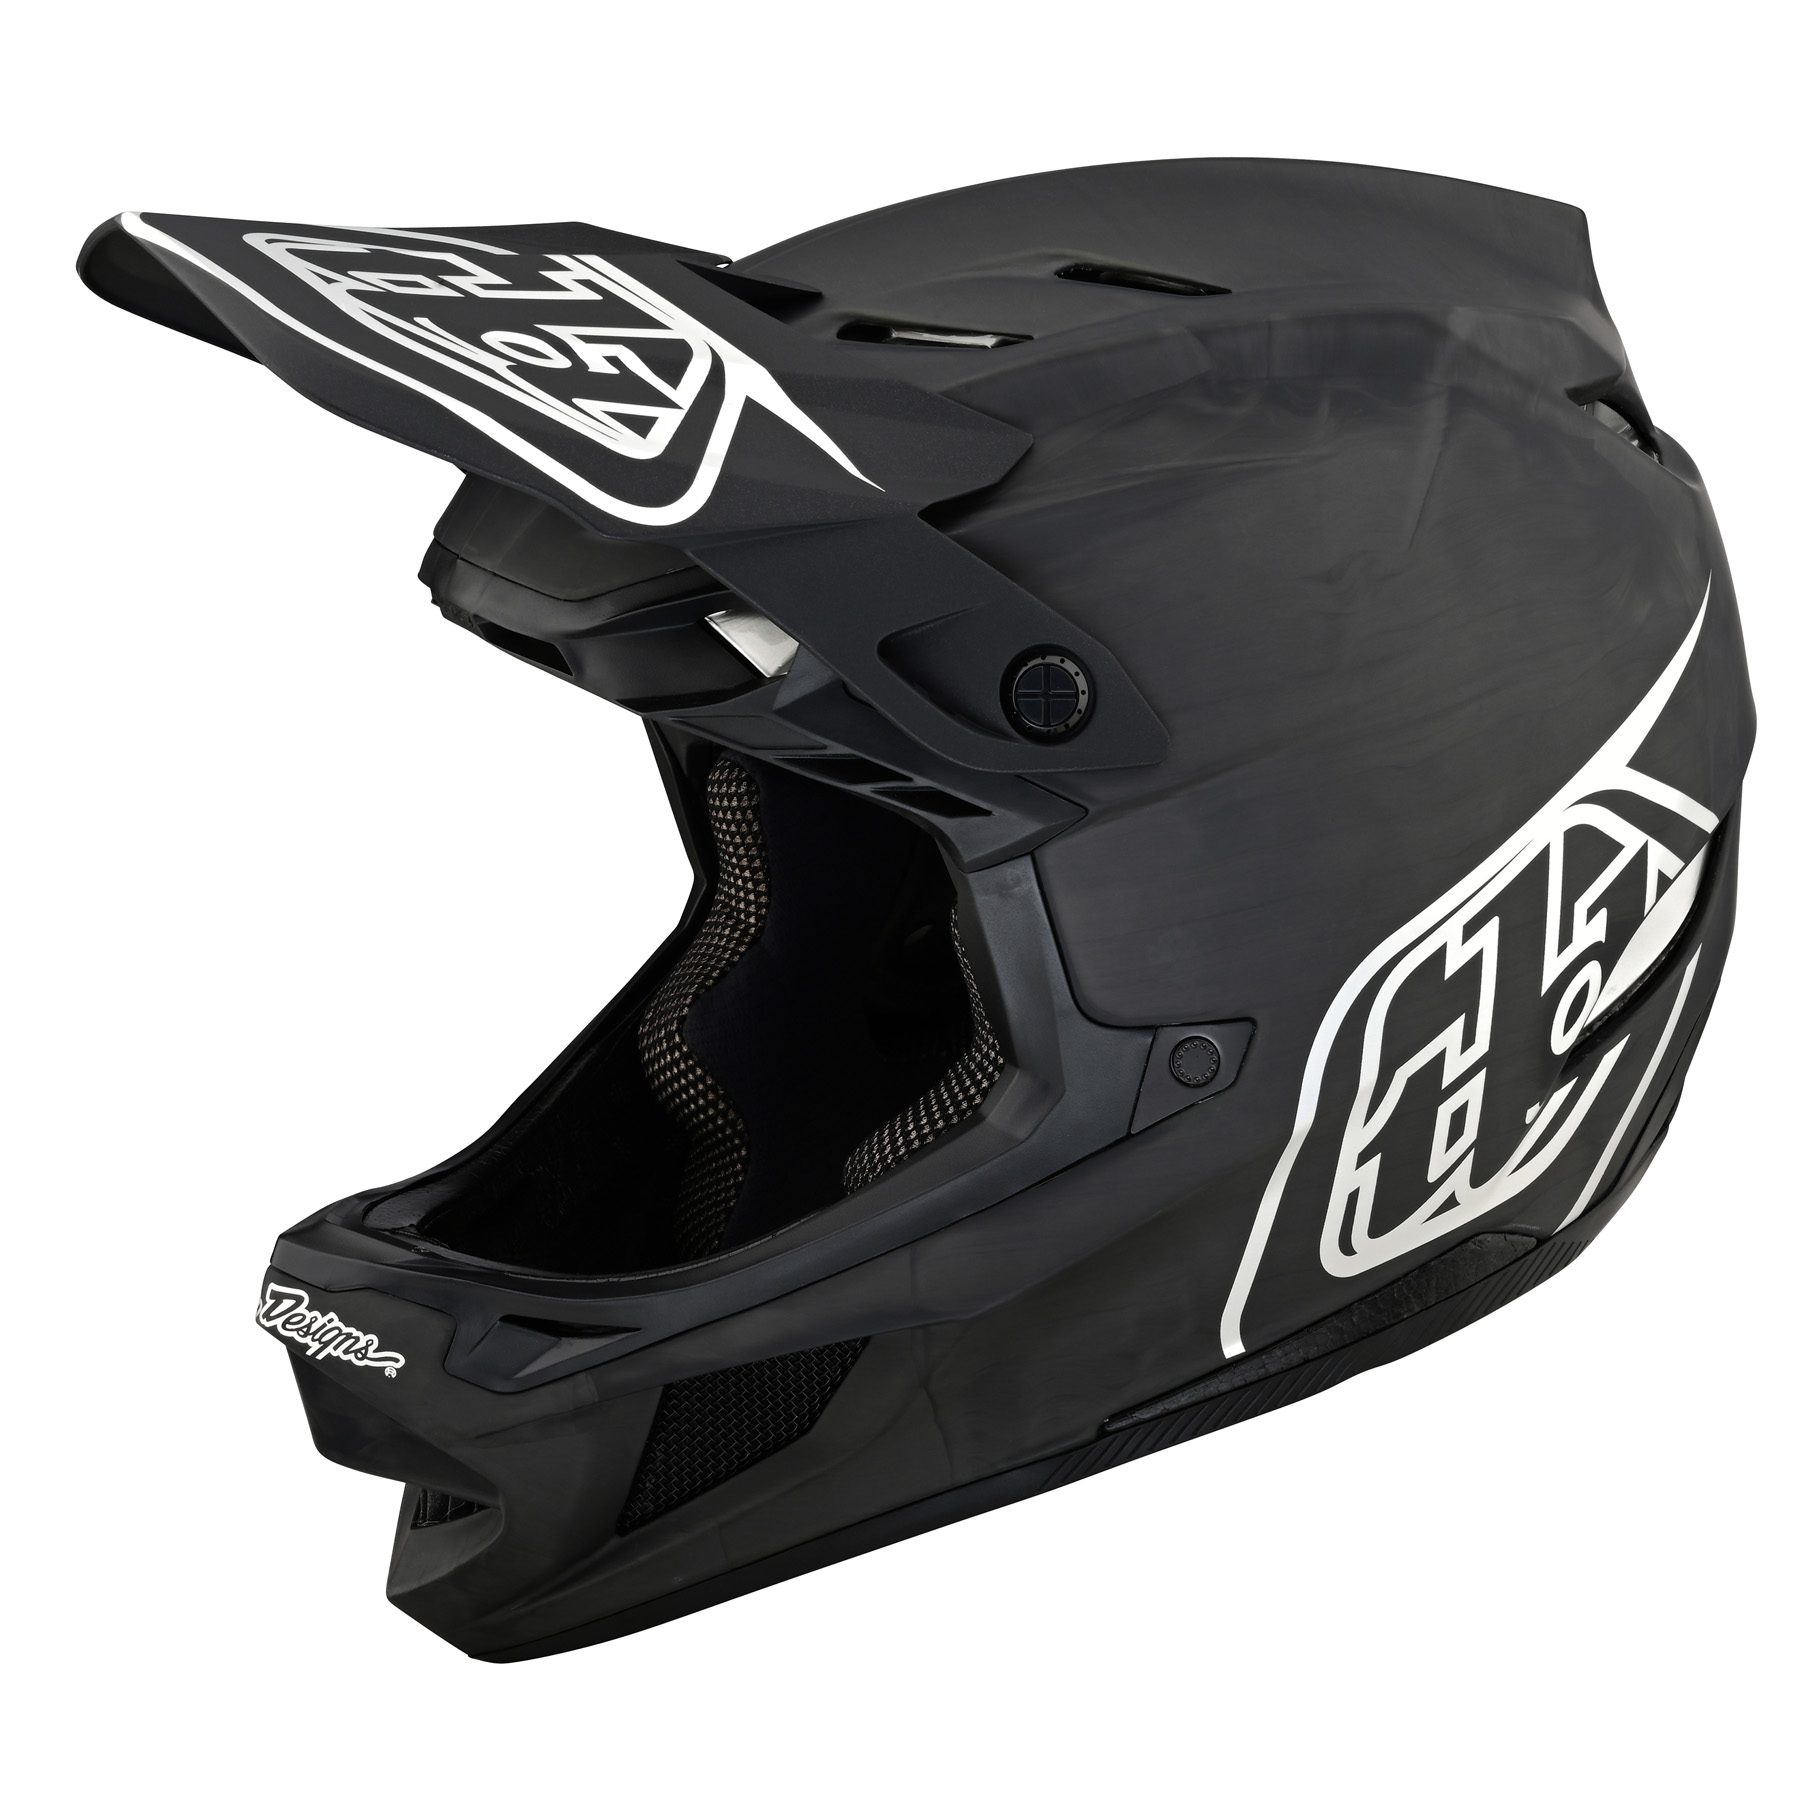 Productfoto van Troy Lee Designs D4 Carbon MIPS Helm - Stealth Black/Silver